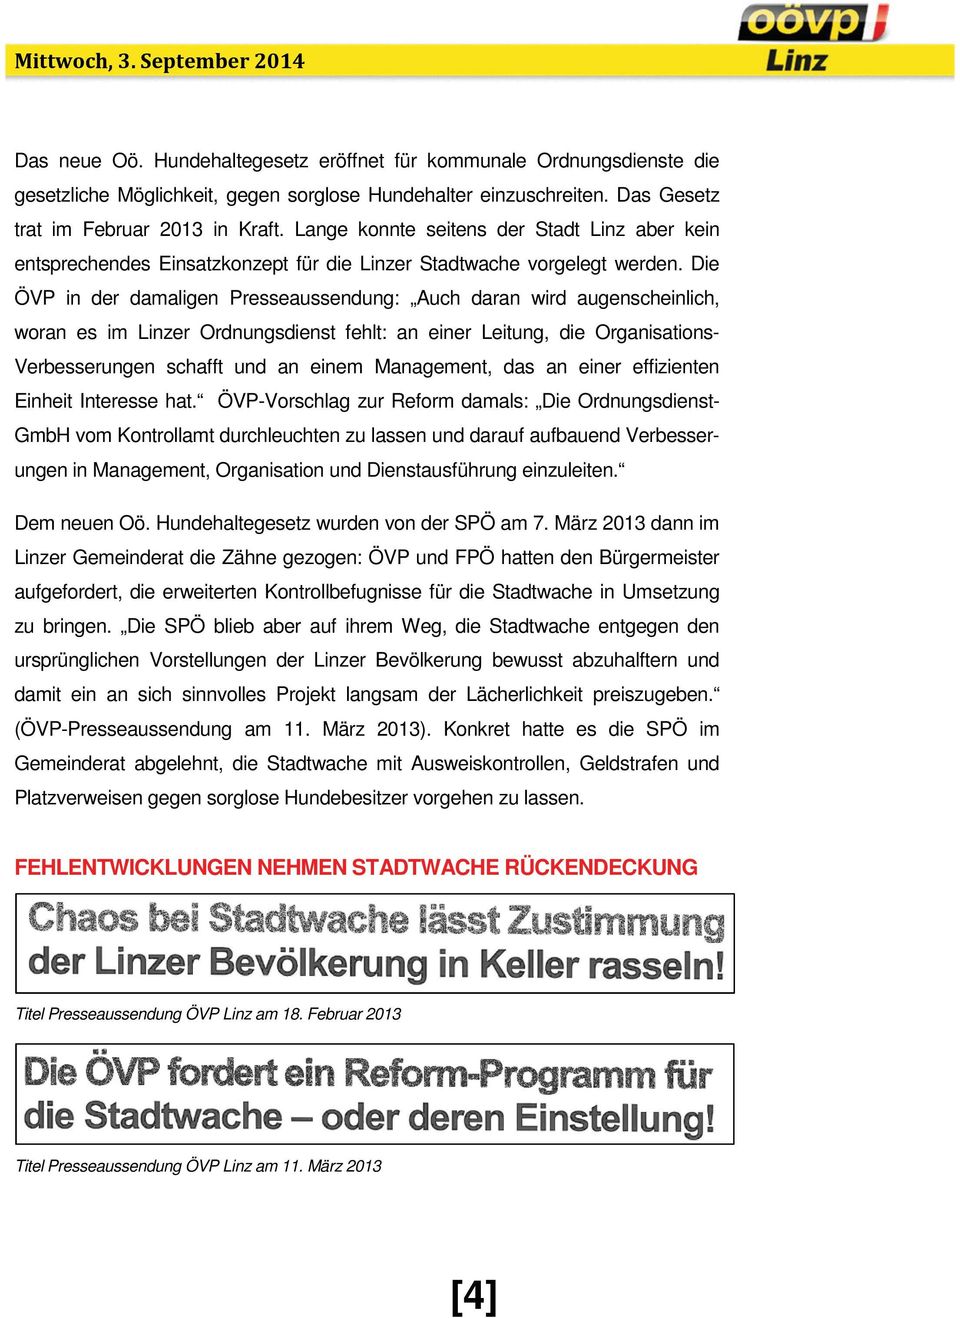 Die ÖVP in der damaligen Presseaussendung: Auch daran wird augenscheinlich, woran es im Linzer Ordnungsdienst fehlt: an einer Leitung, die Organisations- Verbesserungen schafft und an einem